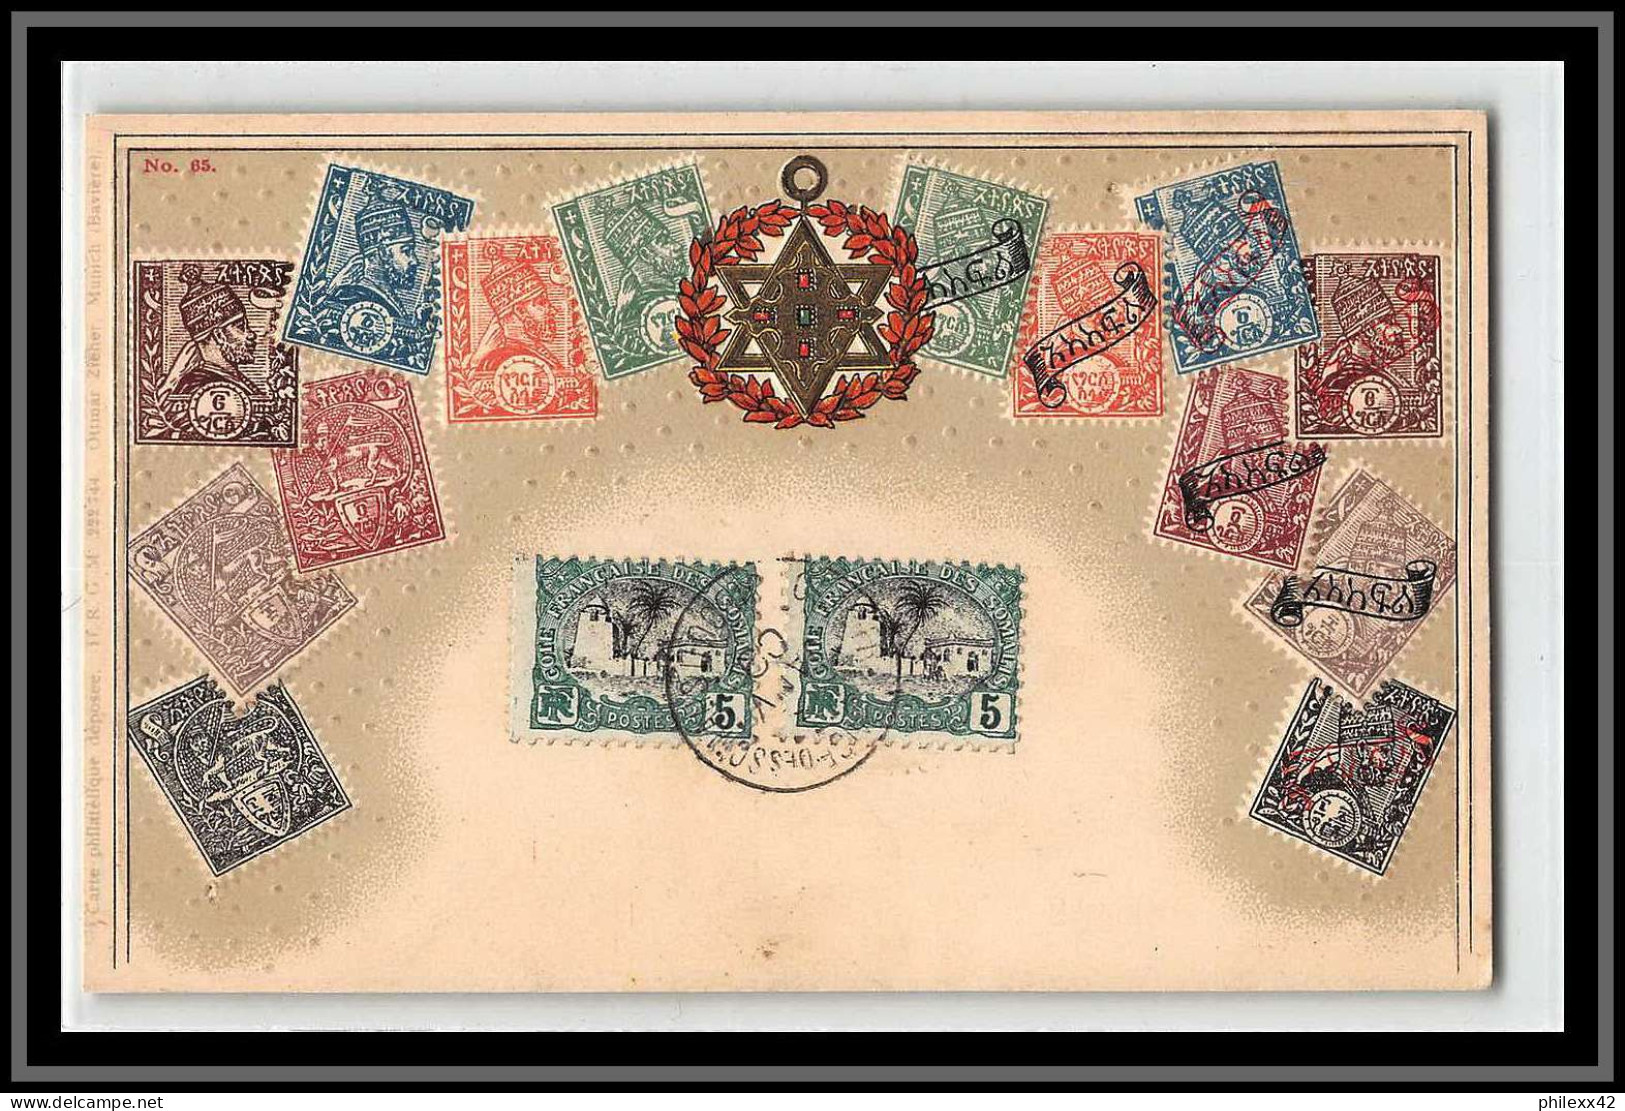 49169 N°53 1909 Cote Des Somalis Timbres N°65 ETHIOPIE ETHIOPIA Carte Postale Embossée Gaufrée Hankow China - Covers & Documents